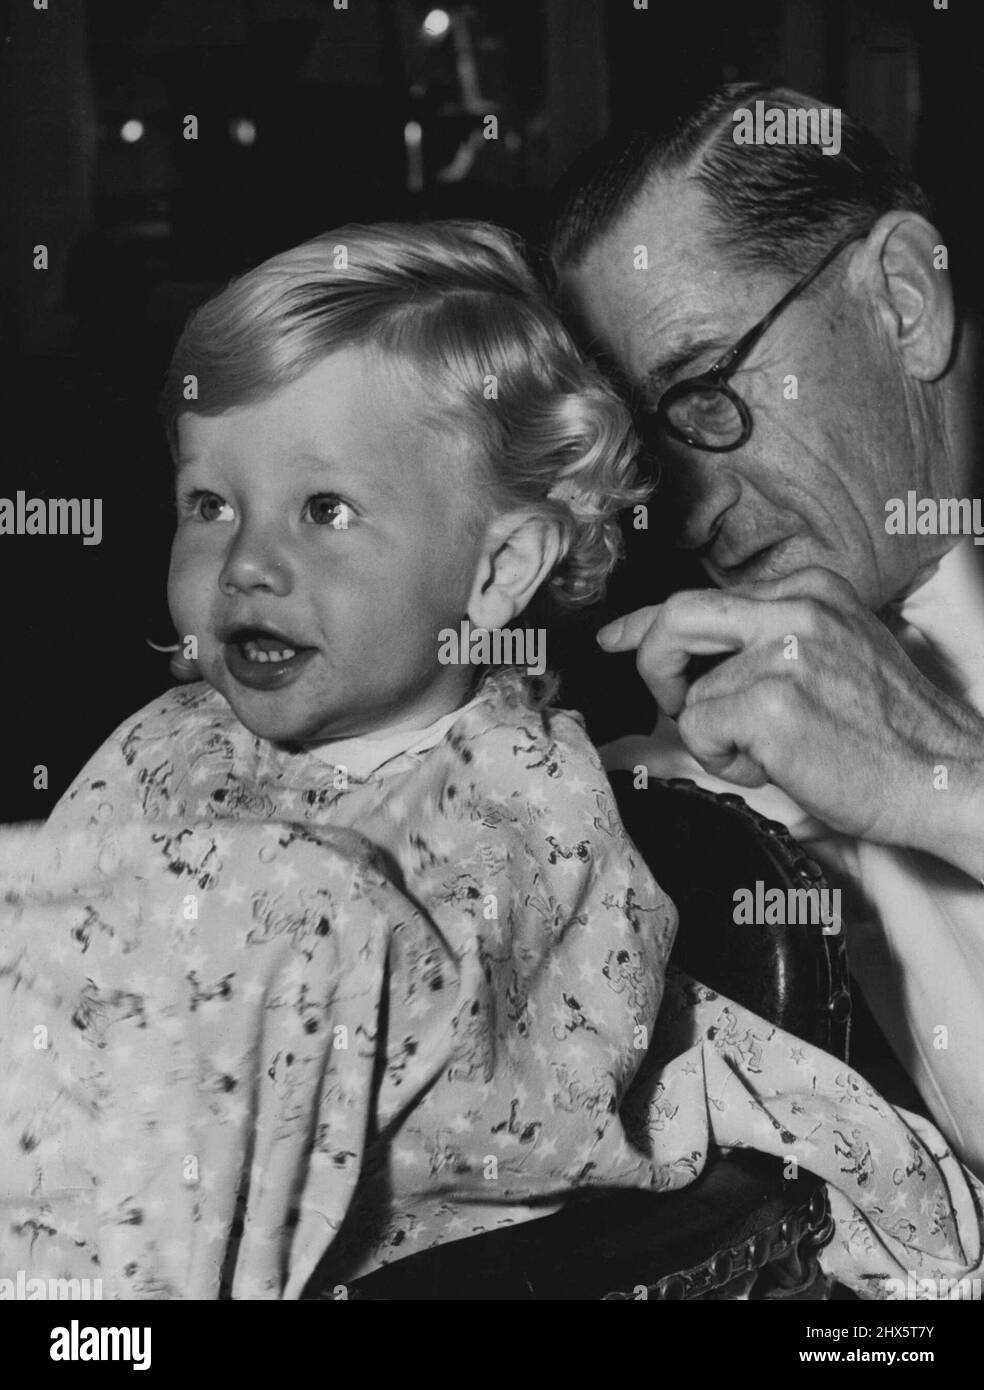 Hoffen wir, dass ich wie ein richtiger Junge aussehen werde, wenn diese saurem Locken abgehackt werden. Colin Talbot, 15, Monate, mit dem süßen Tough-Guy-Ausdruck, musste nicht überredet werden. Er genoss seinen ersten Haarschnitt so sehr, dass er sich weigerte, den Stuhl zu verlassen und von seiner Mutter entfernt werden musste. 14. Juli 1952. Stockfoto